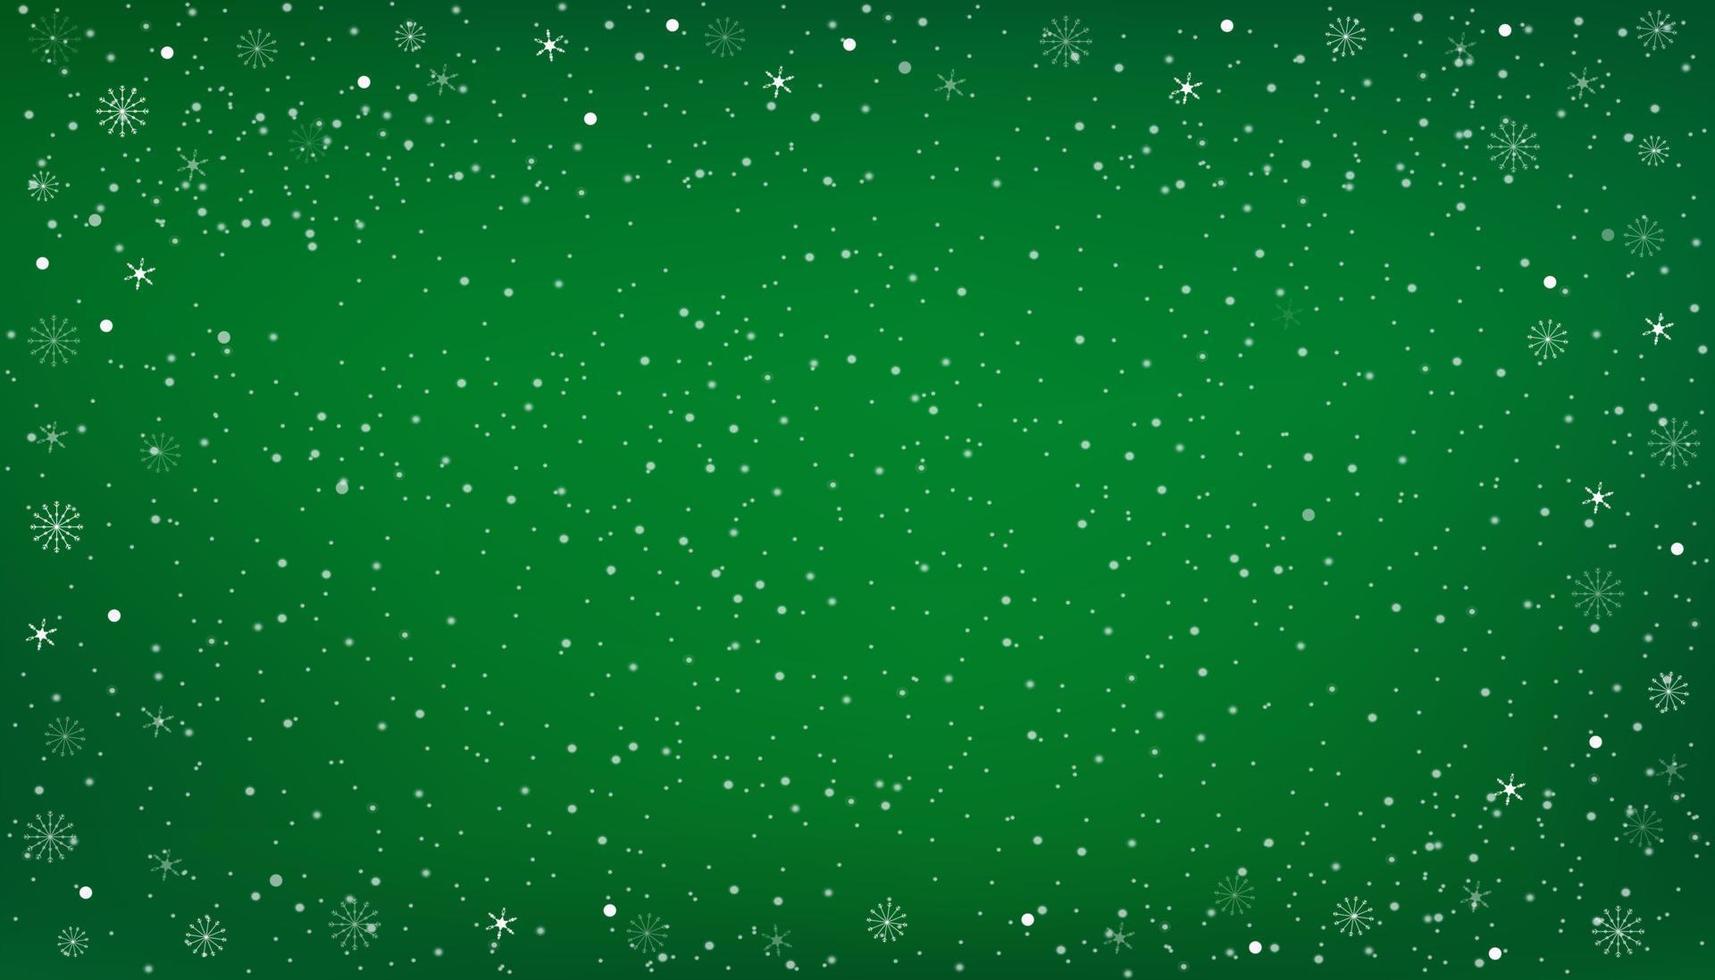 weihnachtsfahne mit schnee auf grünem hintergrund.vektor abstrakte winterlandschaftsszene mit schneeflocken auf rahmenrand, kaltwettereffekt und schneebedeckter texturdekoration vektor